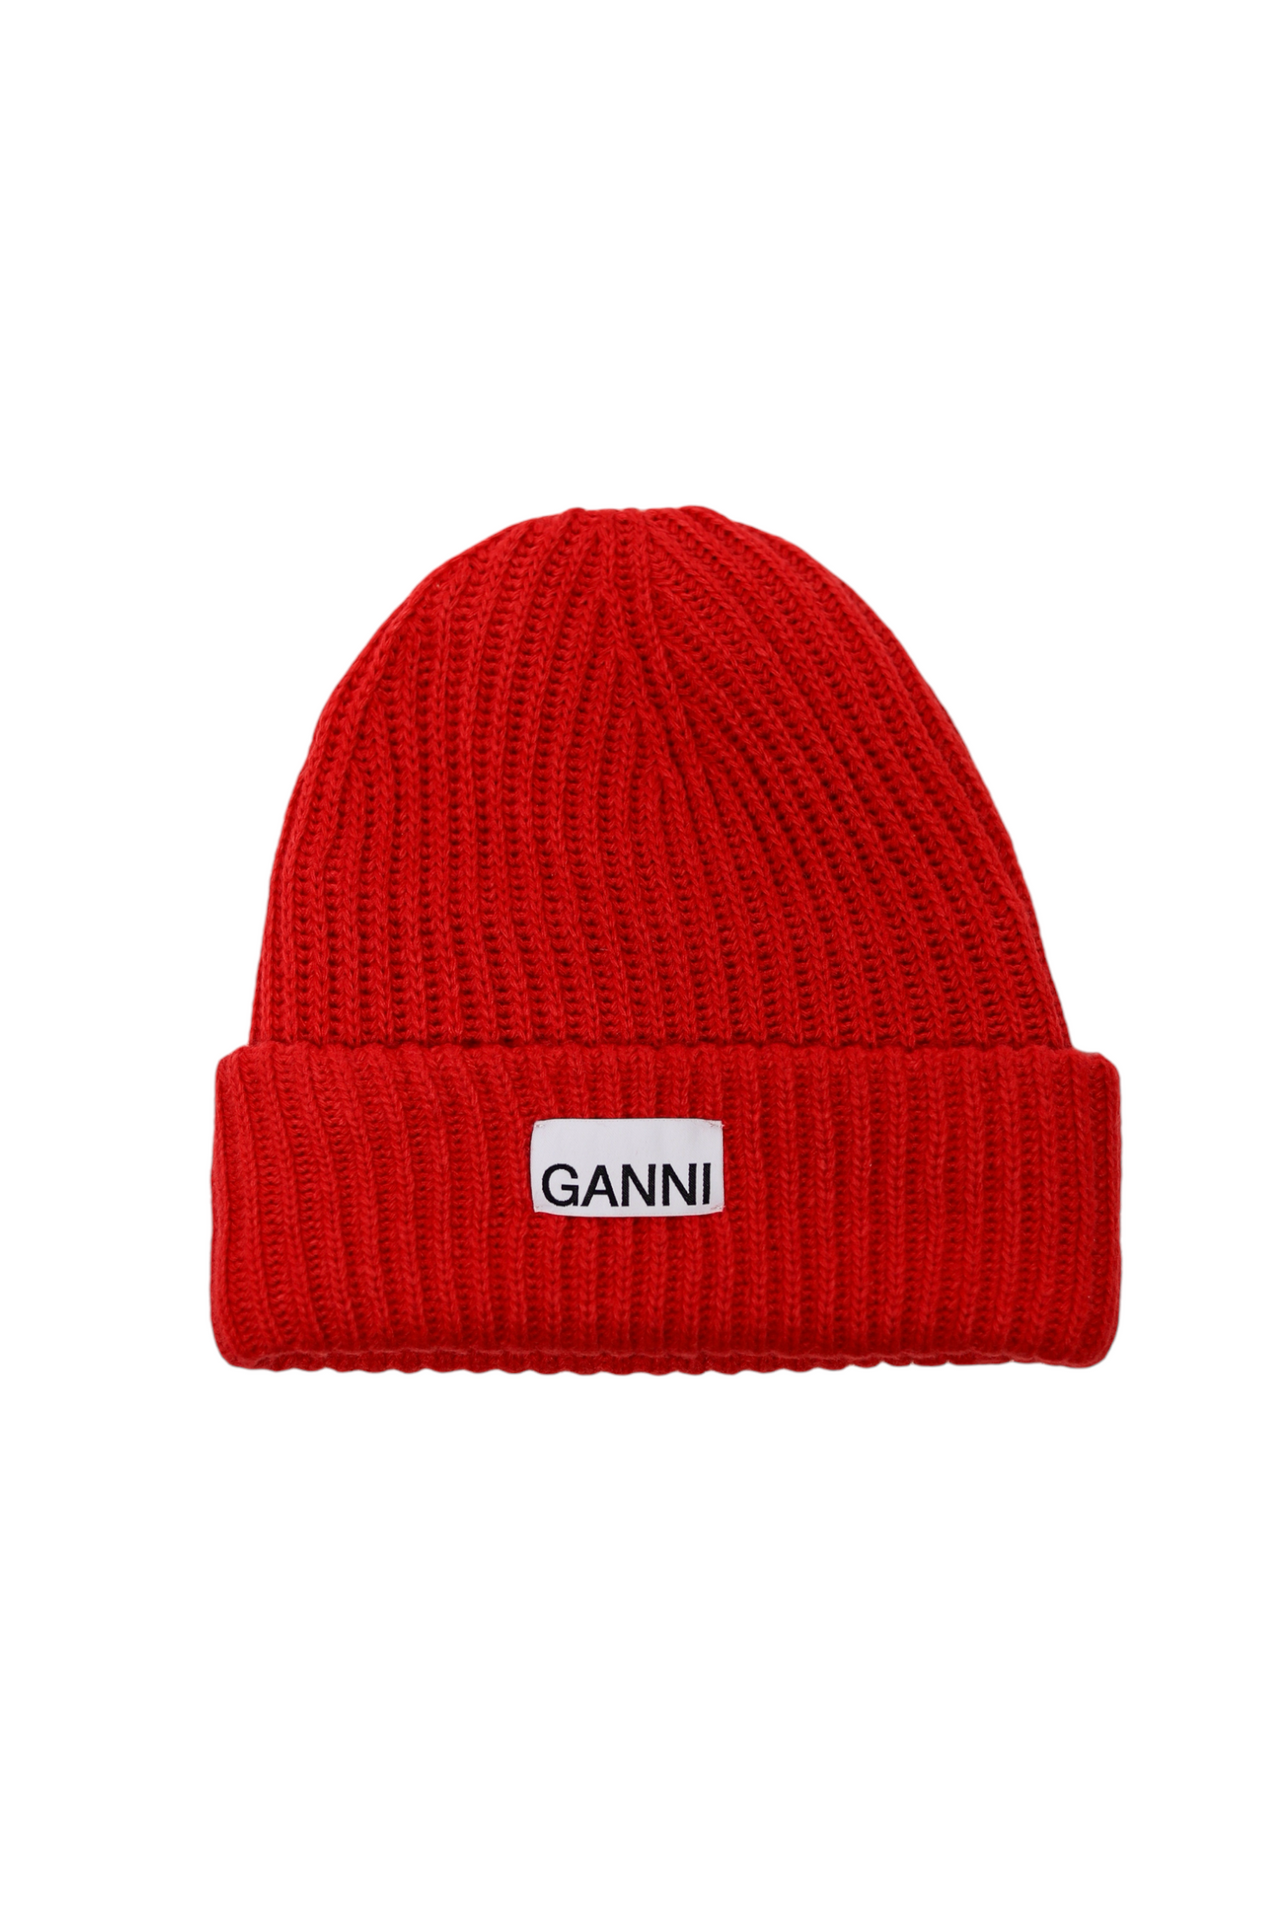 GANNI Wool Rib Knit Beanie Red